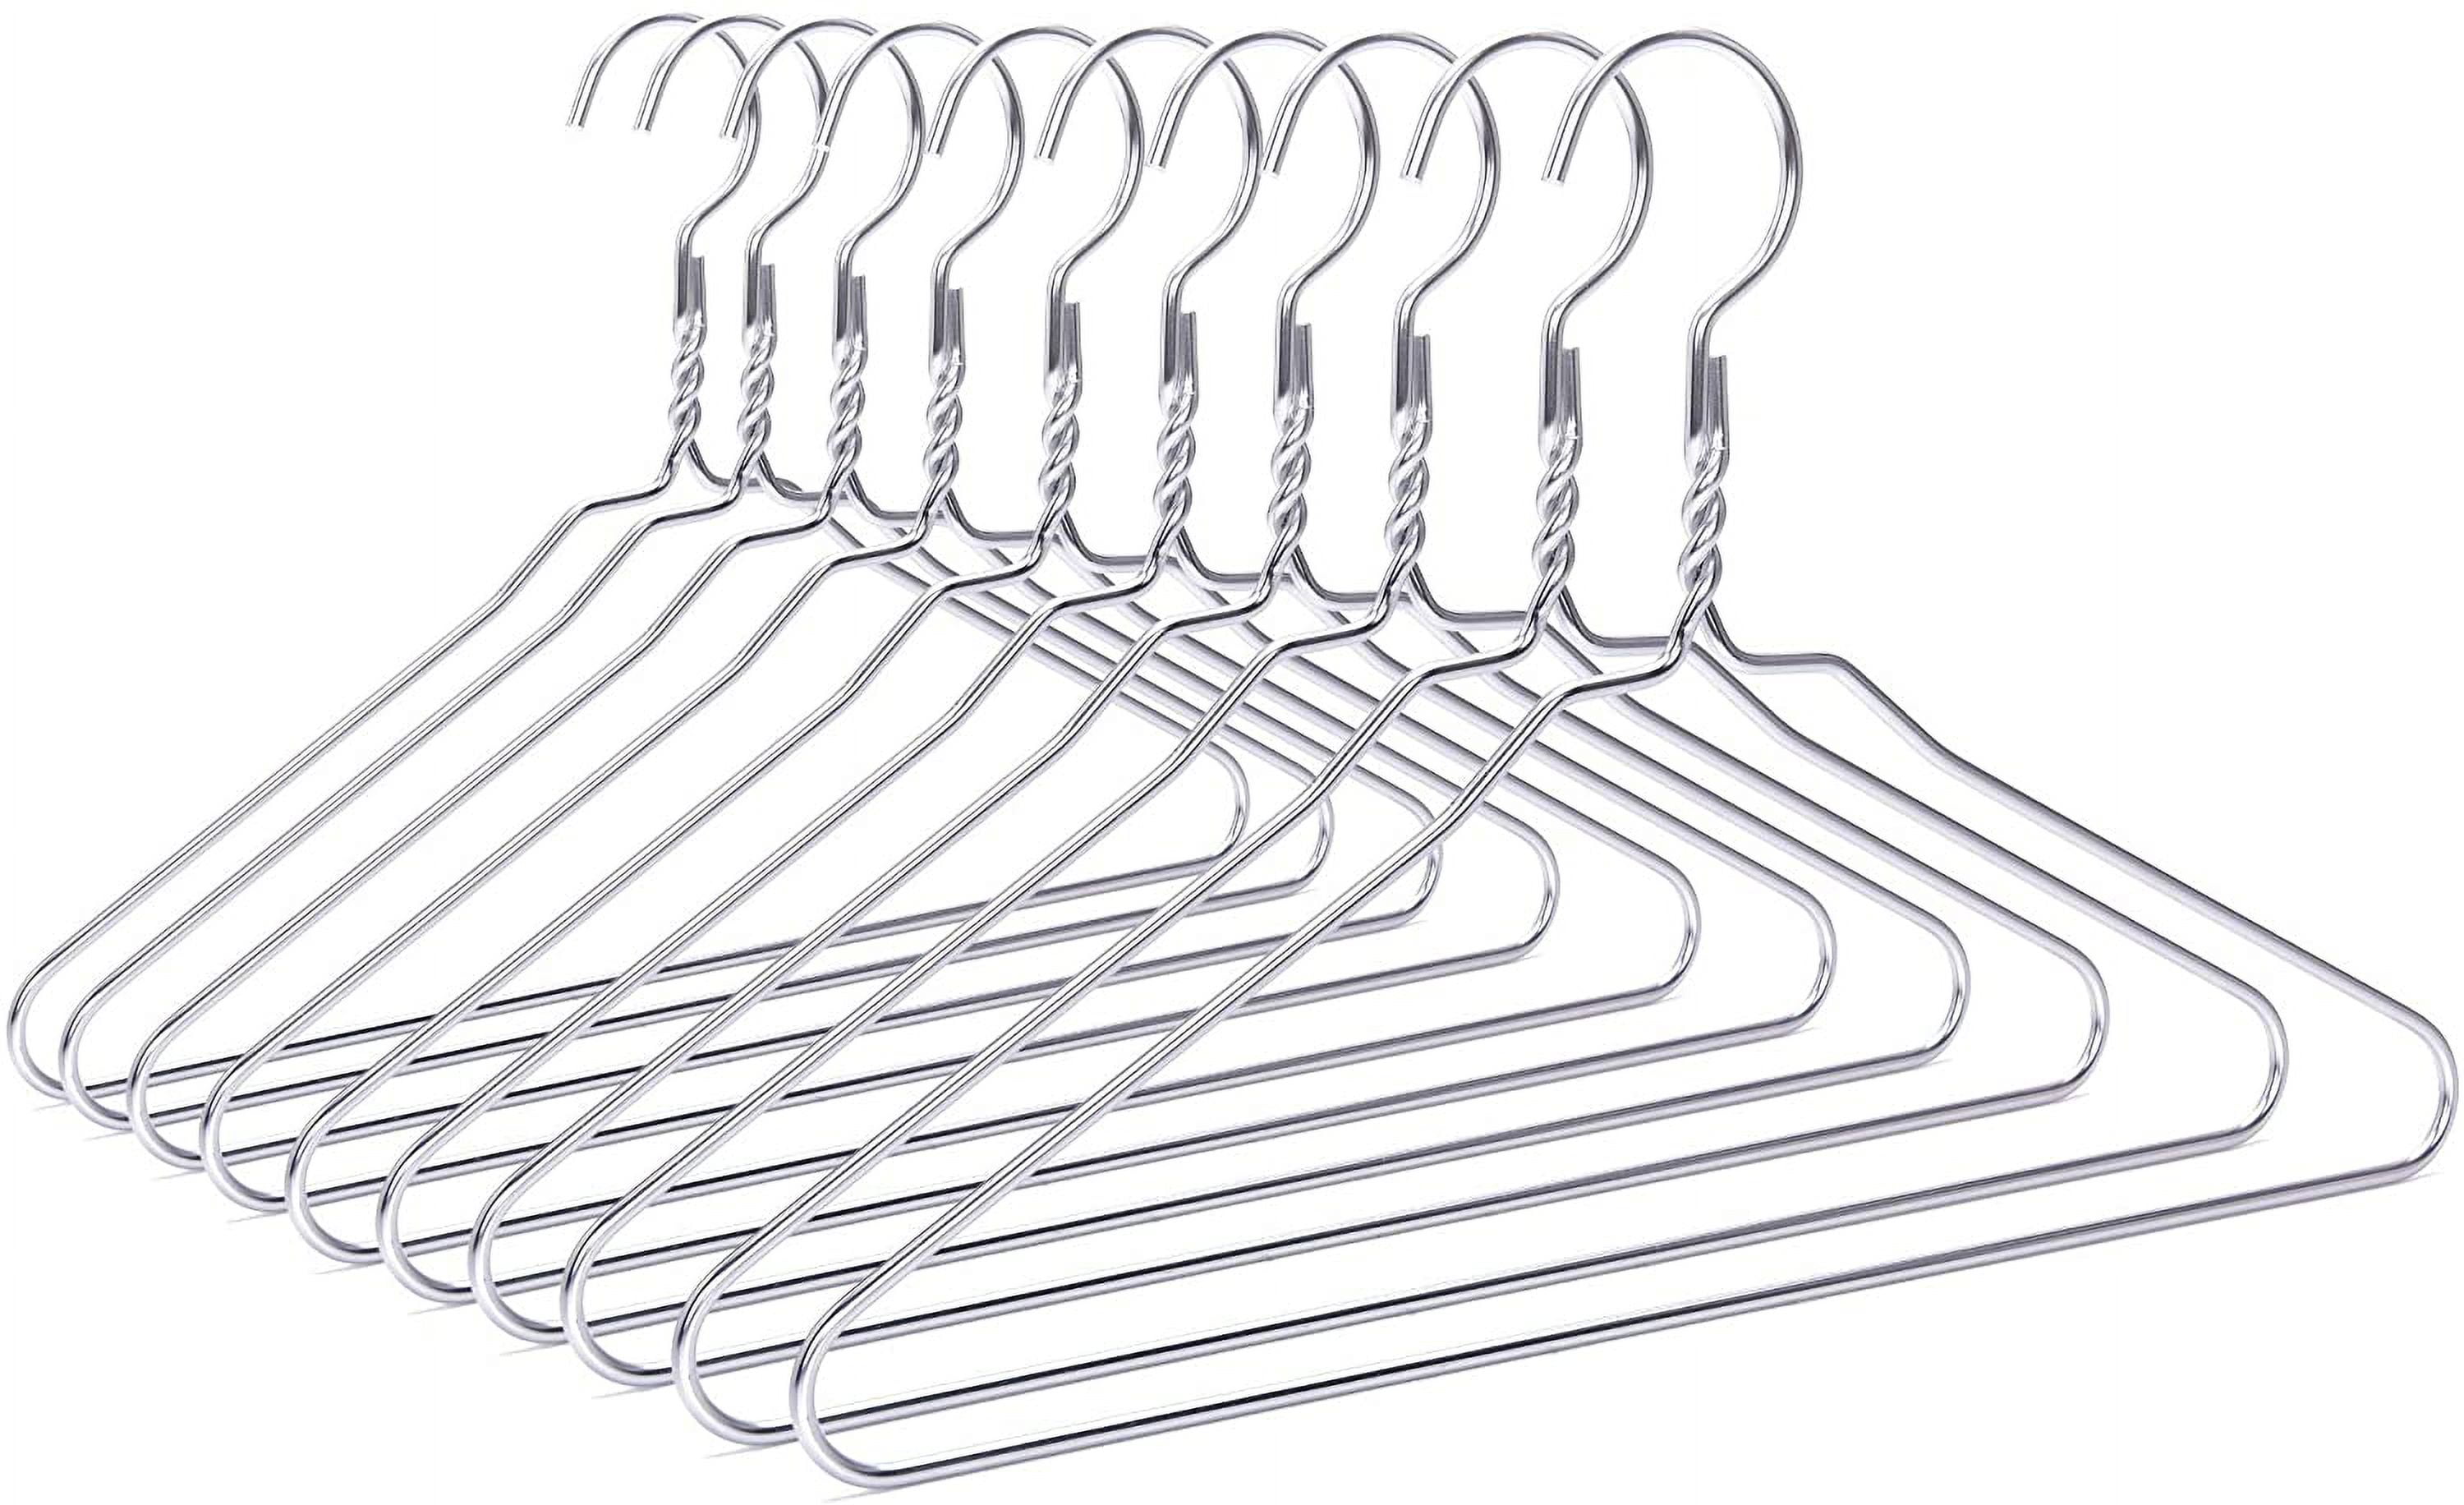 Wire Hangers, 10 Pack, Metal Hangers, Wire Hangers for Clothes, Wire Coat  Hangers, Metal Clothes Hanger, Silver Hangers, Shirt Hangers, Slim Hangers,  Thin Hangers, Standard Hangers 